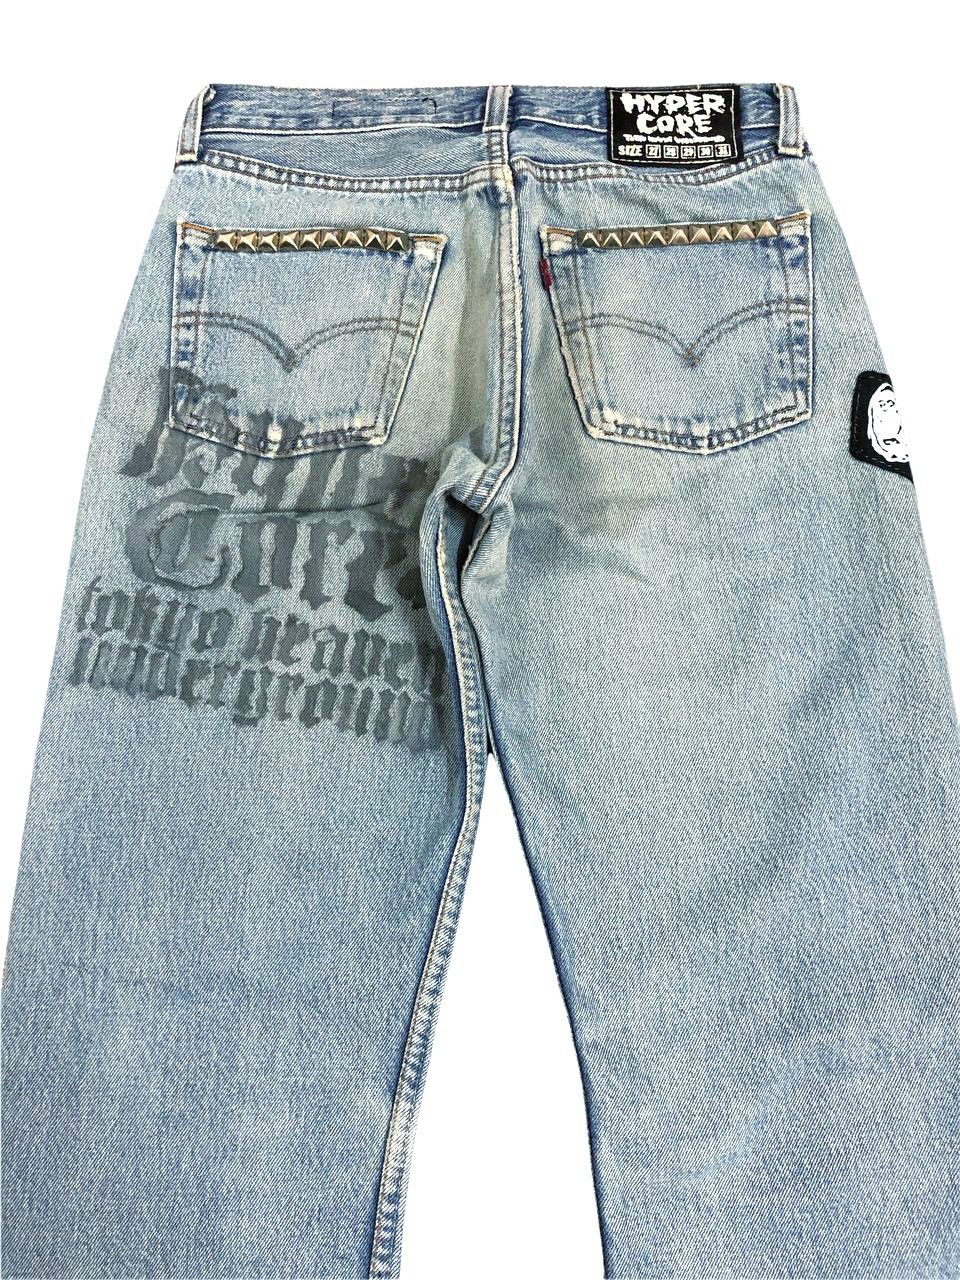 Vintage Vintage Levis Distressed Custom Patch Punk Jeans Size US 27 - 4 Thumbnail